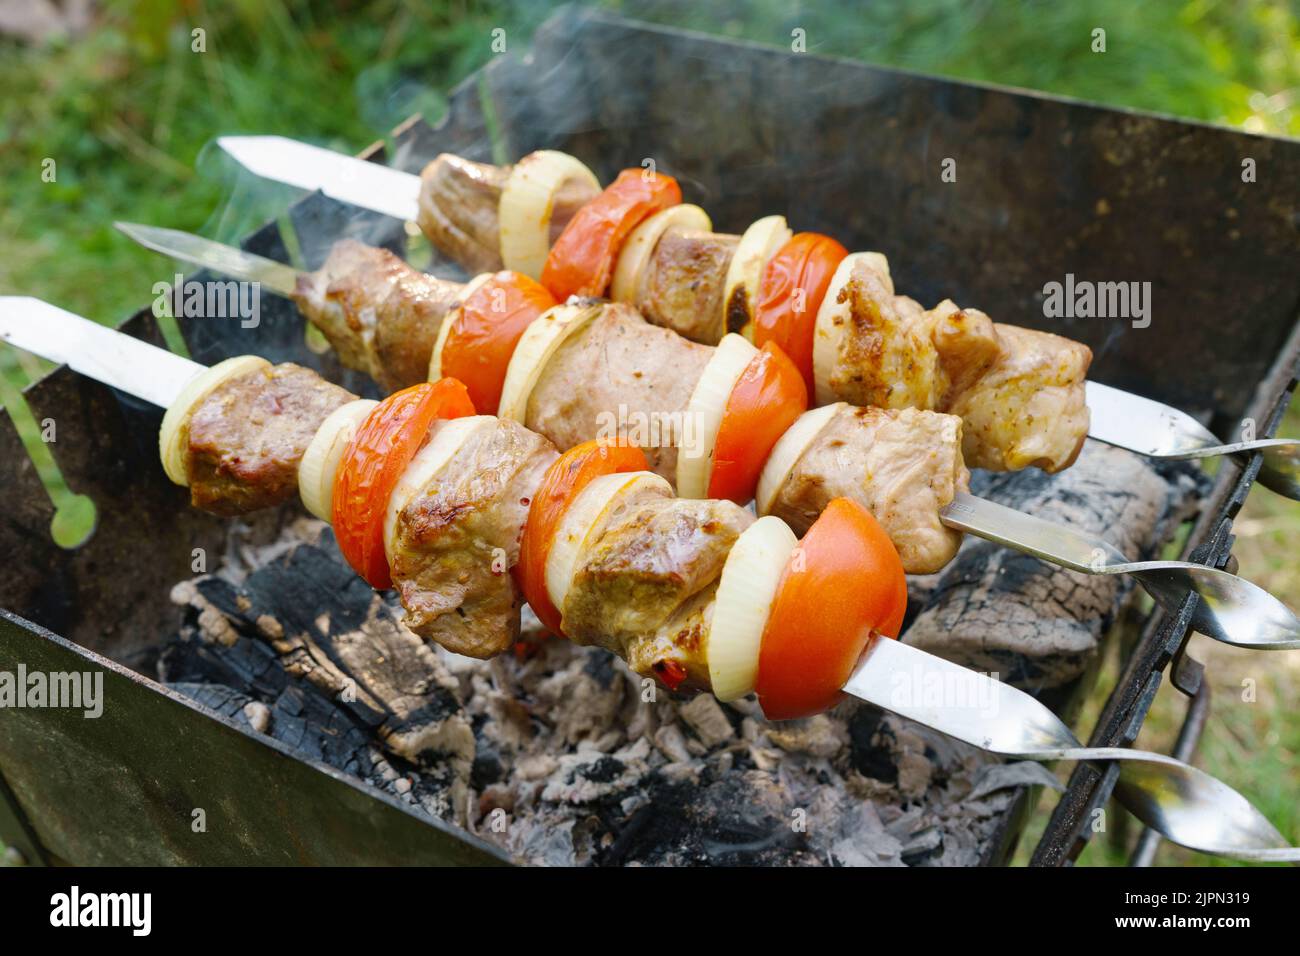 Morceaux de viande marinés à la tomate et à l'oignon sur des brochettes de métal cockées sur un barbecue au charbon de bois. Kebab grillé au charbon de bois. Banque D'Images